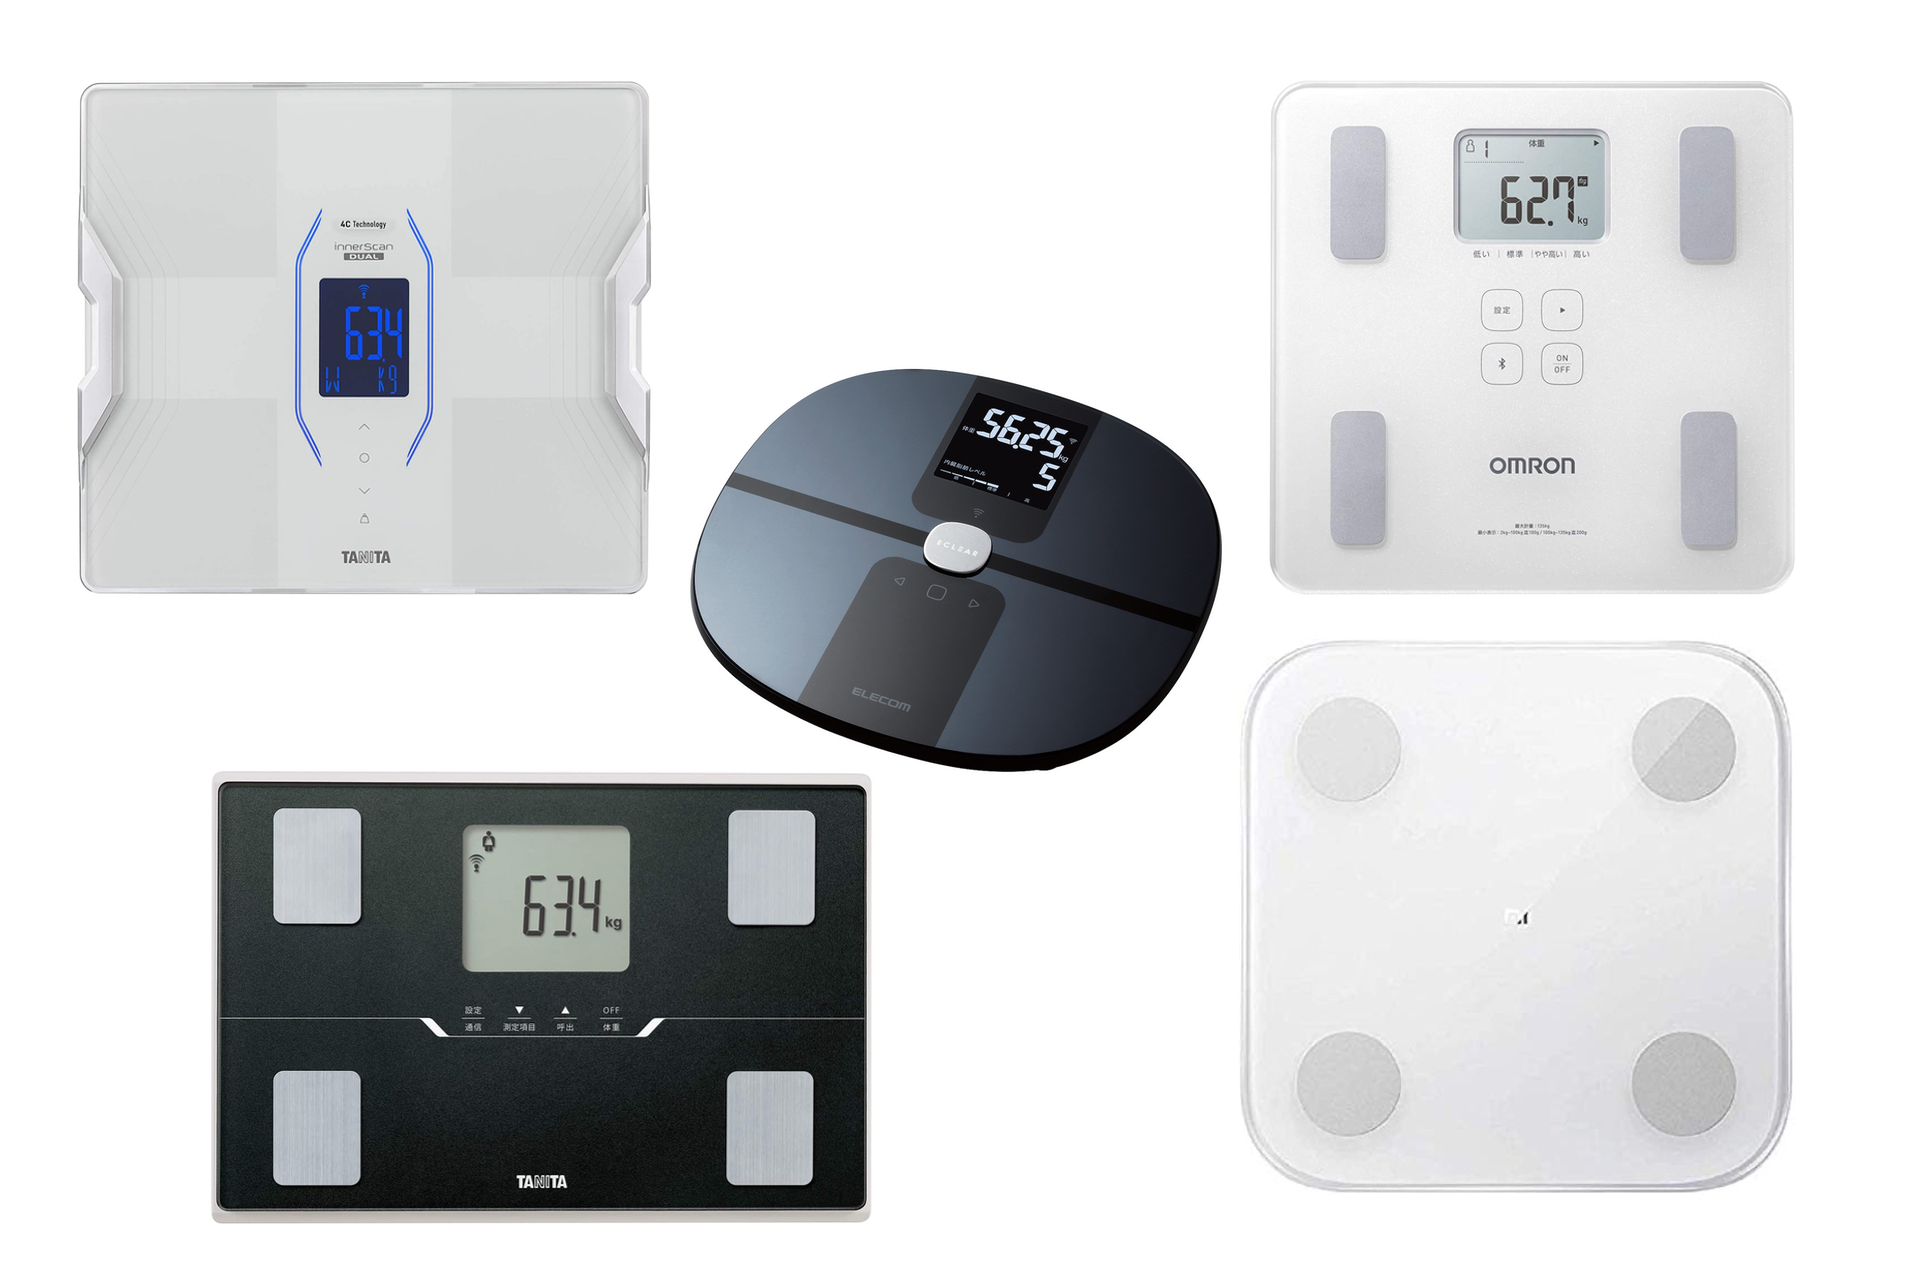 スマホ連携できるスマート体重計のおすすめ5選 測定データの蓄積がダイエットや健康管理に役立つ Engadget 日本版